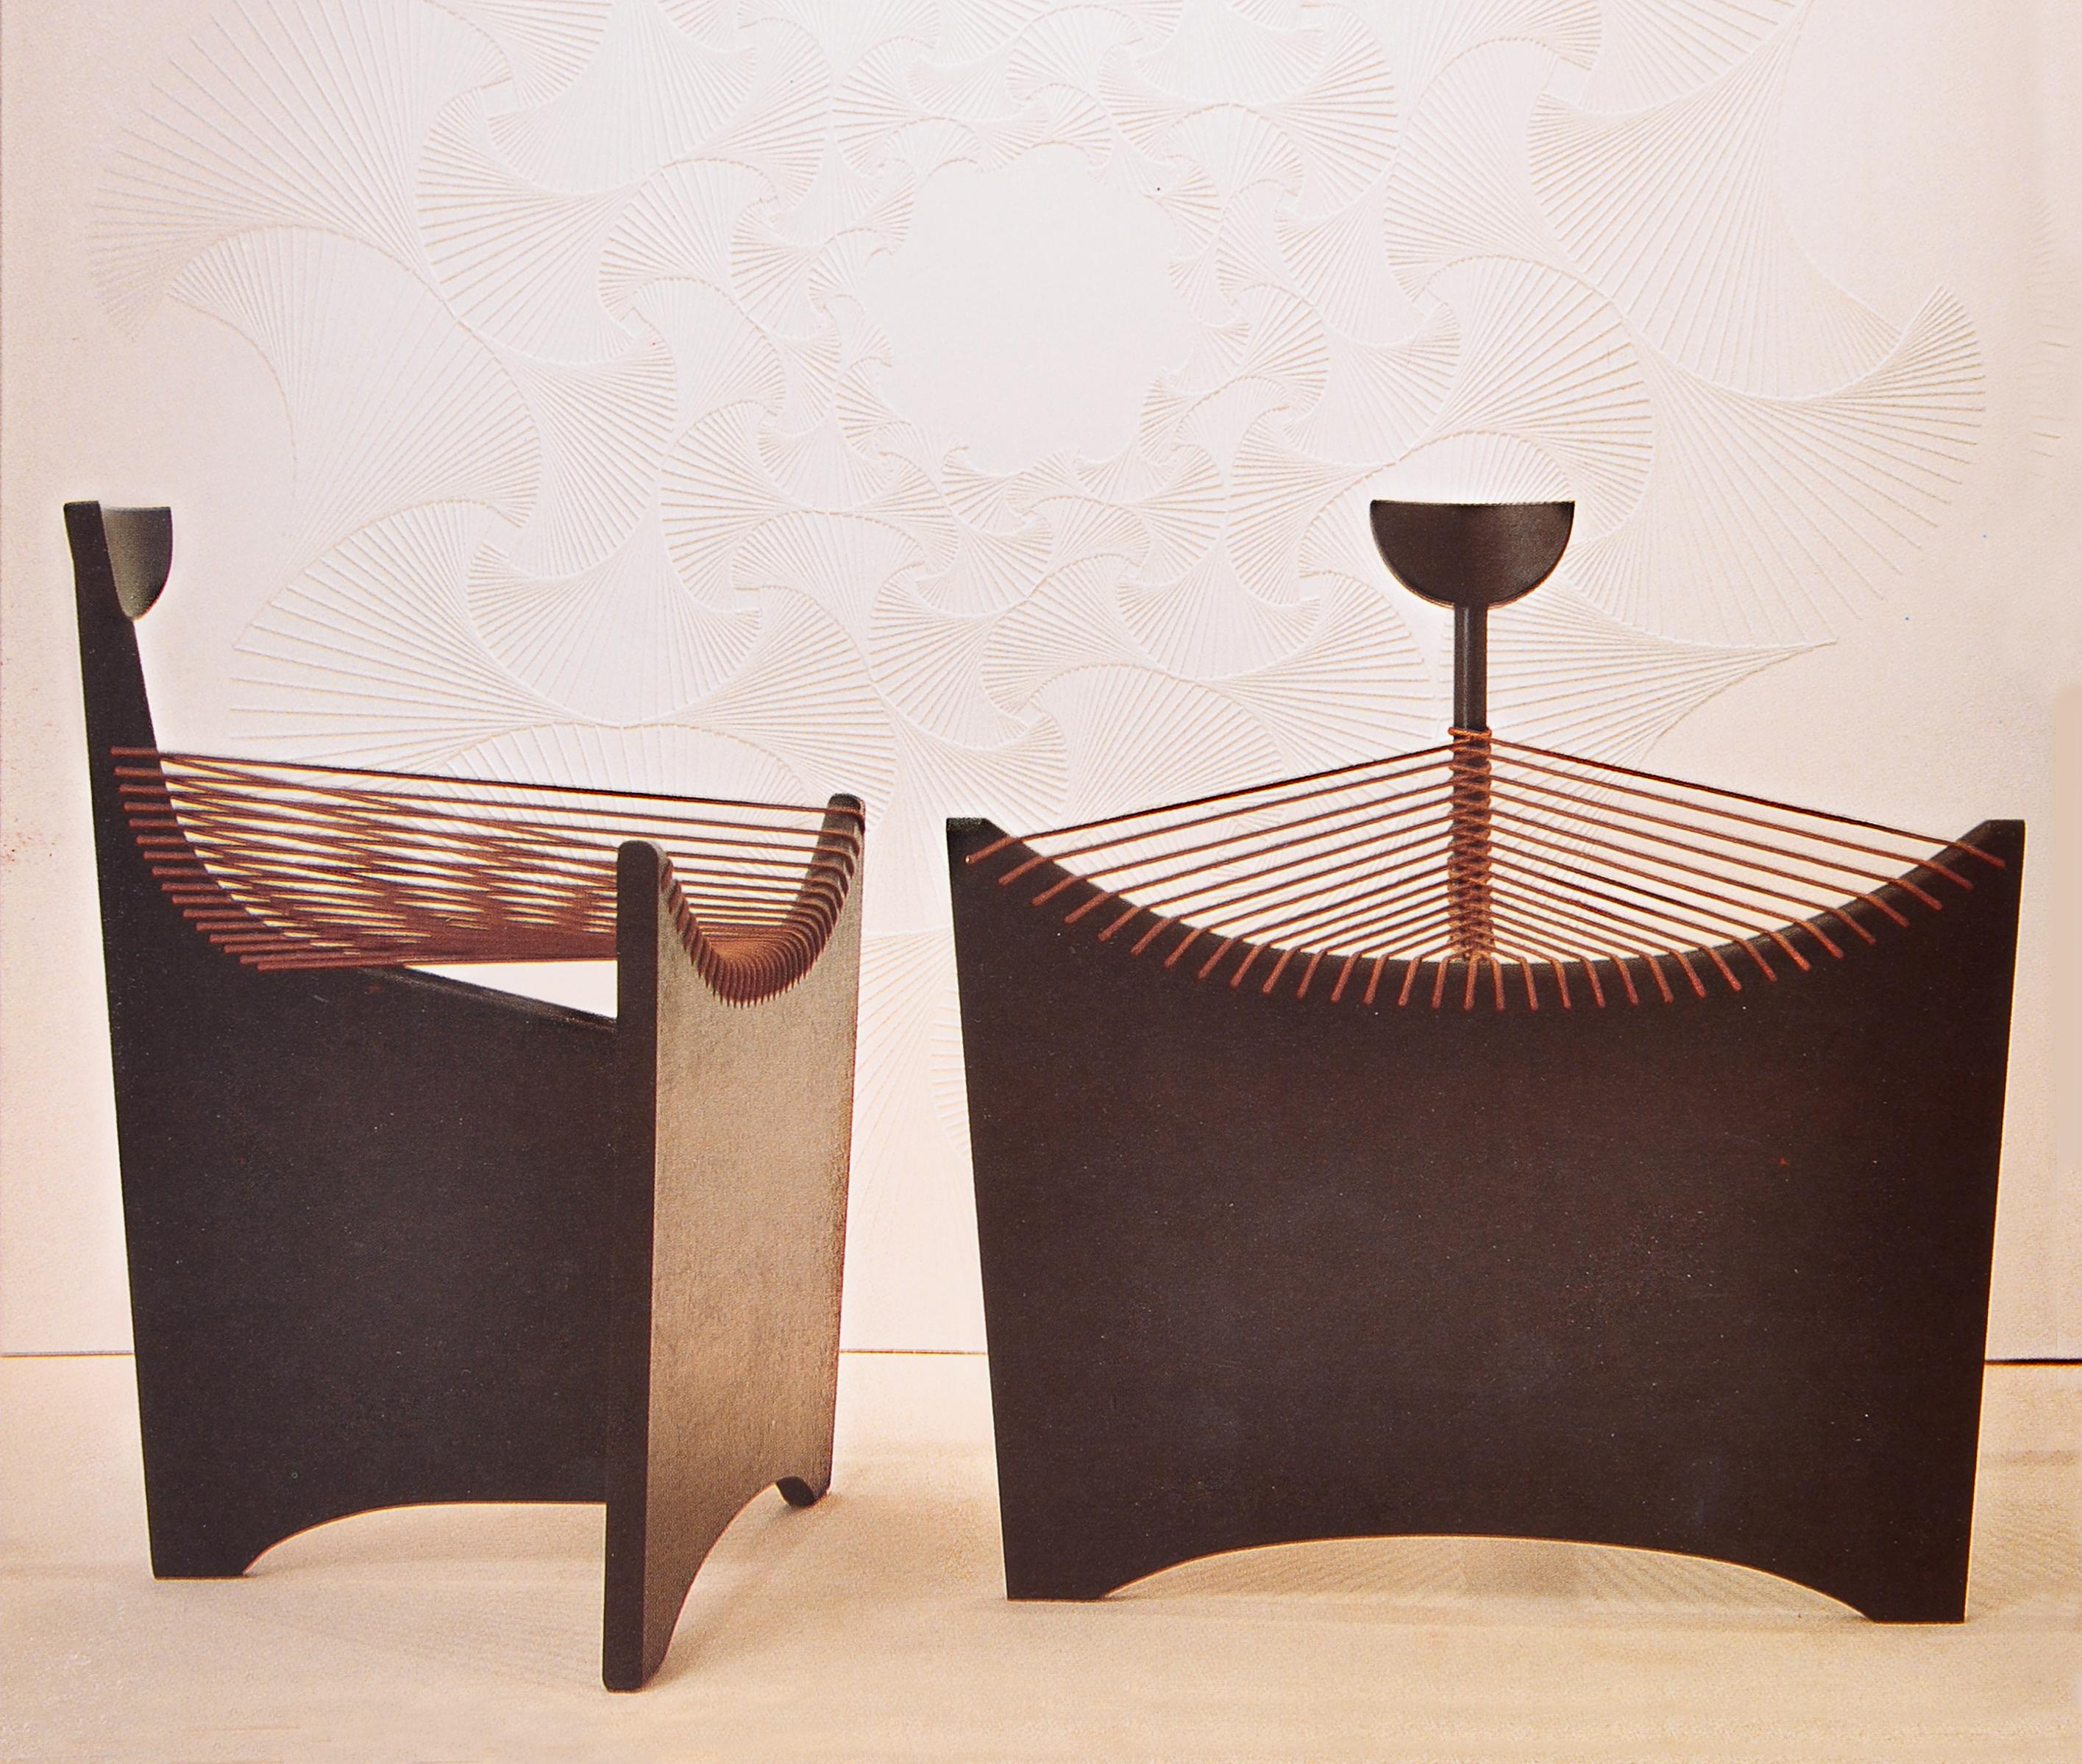 MATERIALIEN: Guinda-Holz, vollständig handgefertigt.

Stuhl Cuerdas , airedelsur von Juan Azcue:
Juan Azcue, der argentinische Designer, der jedes Möbelstück zu einem Kunstwerk macht.
Juan Azcues Karriere als Designer hatte zwei große Etappen: eine